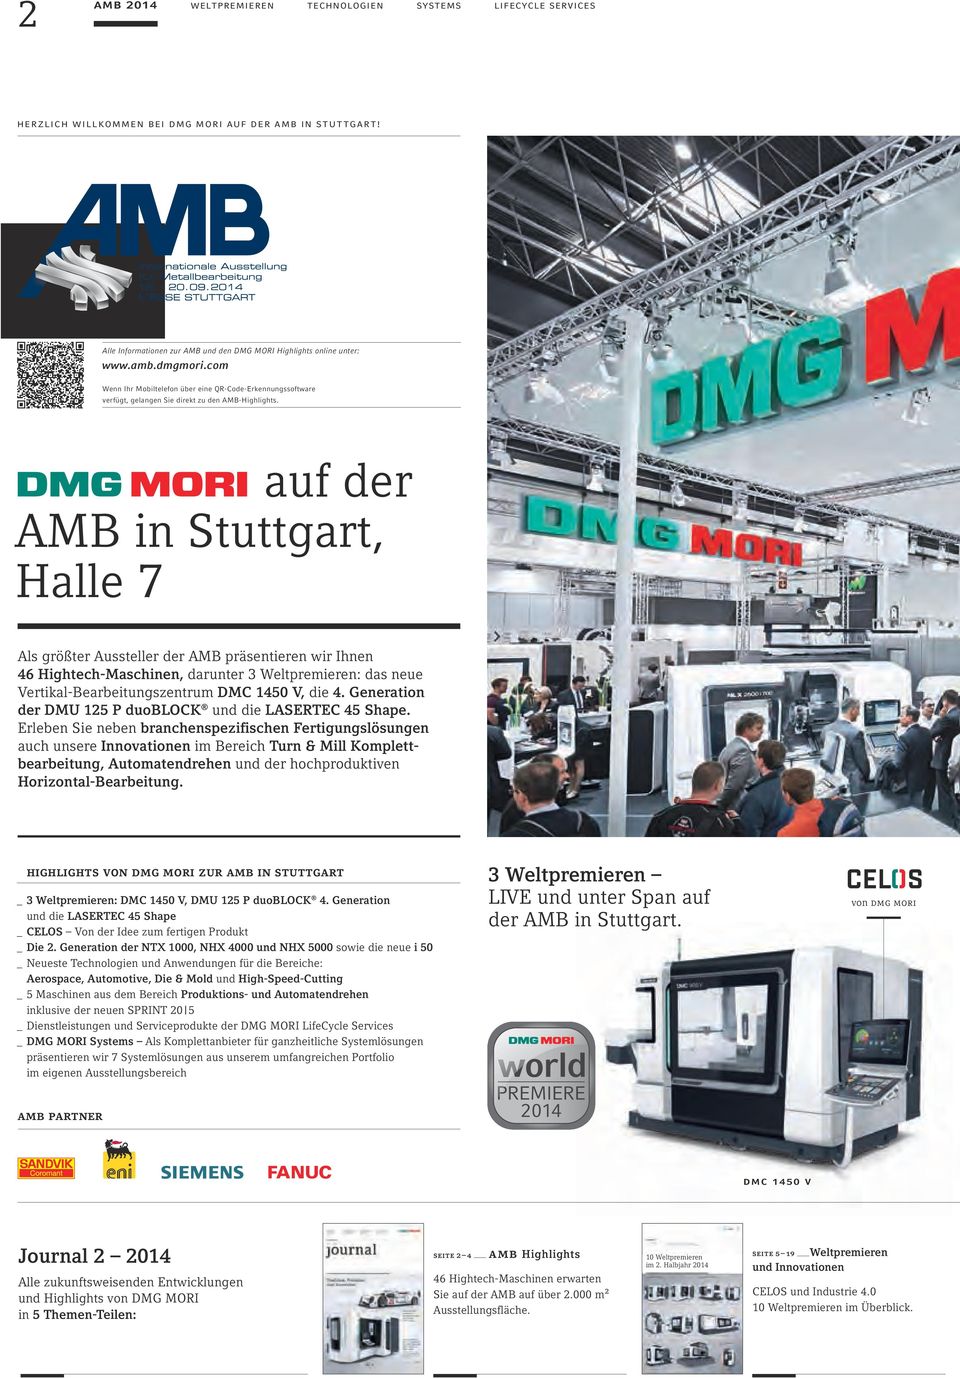 auf der AMB in Stuttgart, Halle 7 Als größter Aussteller der AMB präsentieren wir Ihnen 46 Hightech-Maschinen, darunter 3 Weltpremieren: das neue Vertikal-Bearbeitungszentrum DMC 1450 V, die 4.